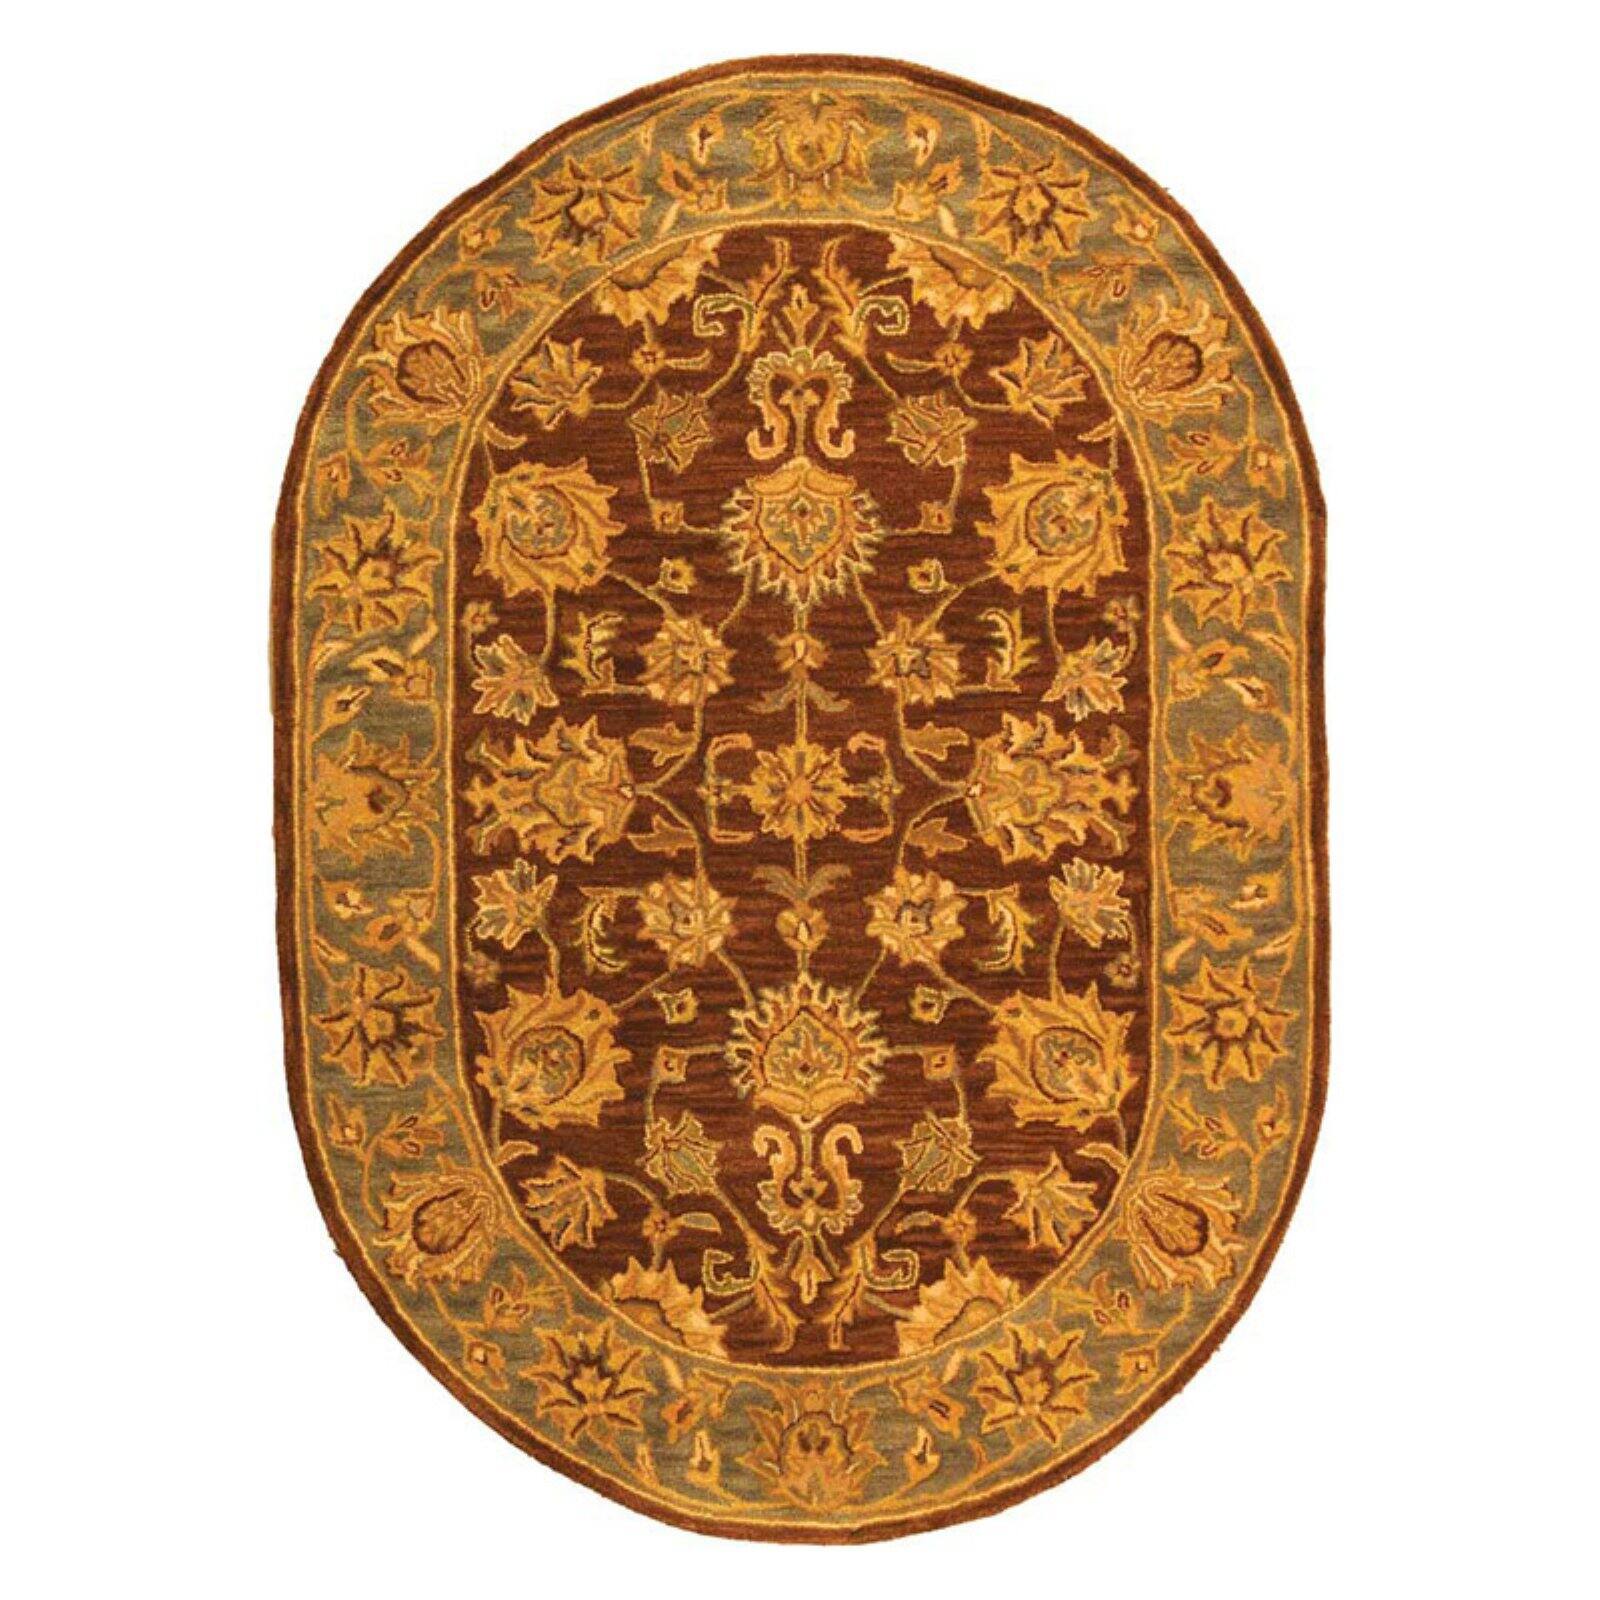 SAFAVIEH Heritage Regis Traditional Wool Area Rug, Brown/Blue, 6' x 9' - image 5 of 9